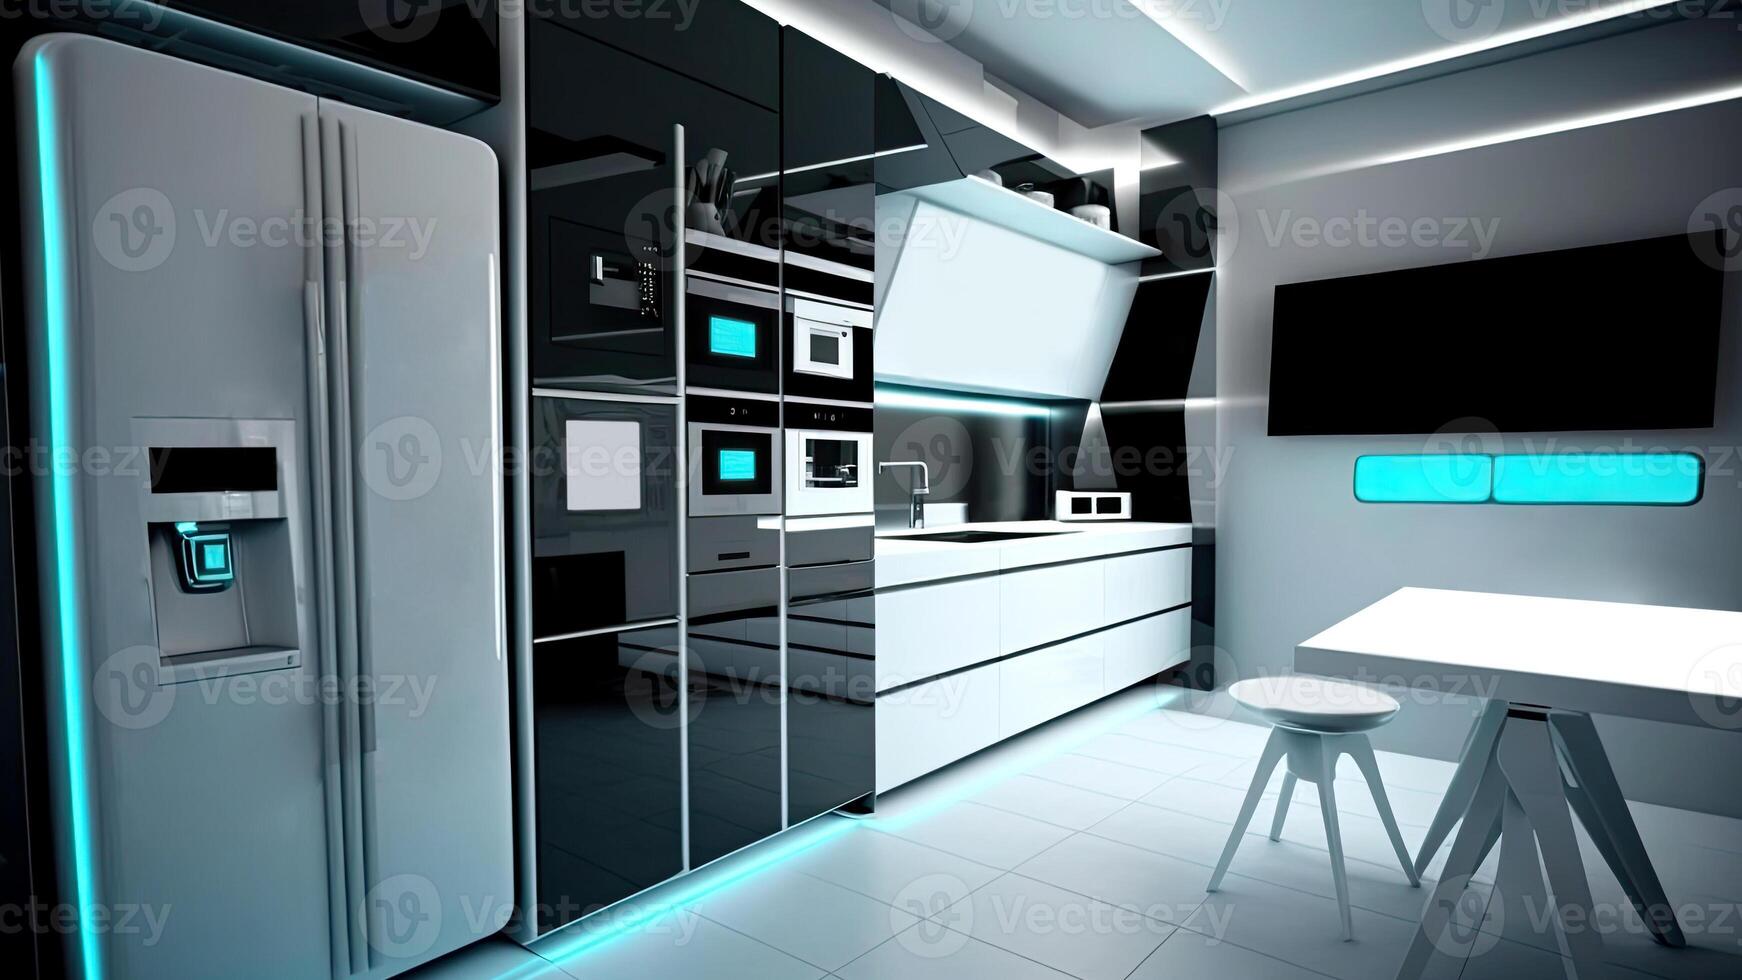 Küche mit Clever Haushaltsgeräte mit Anzeige Bildschirm und ein Clever Ofen mit sprachgesteuert Einstellungen, Konzept von Clever Zuhause und künstlich Intelligenz, erstellt mit generativ ai Technologie foto